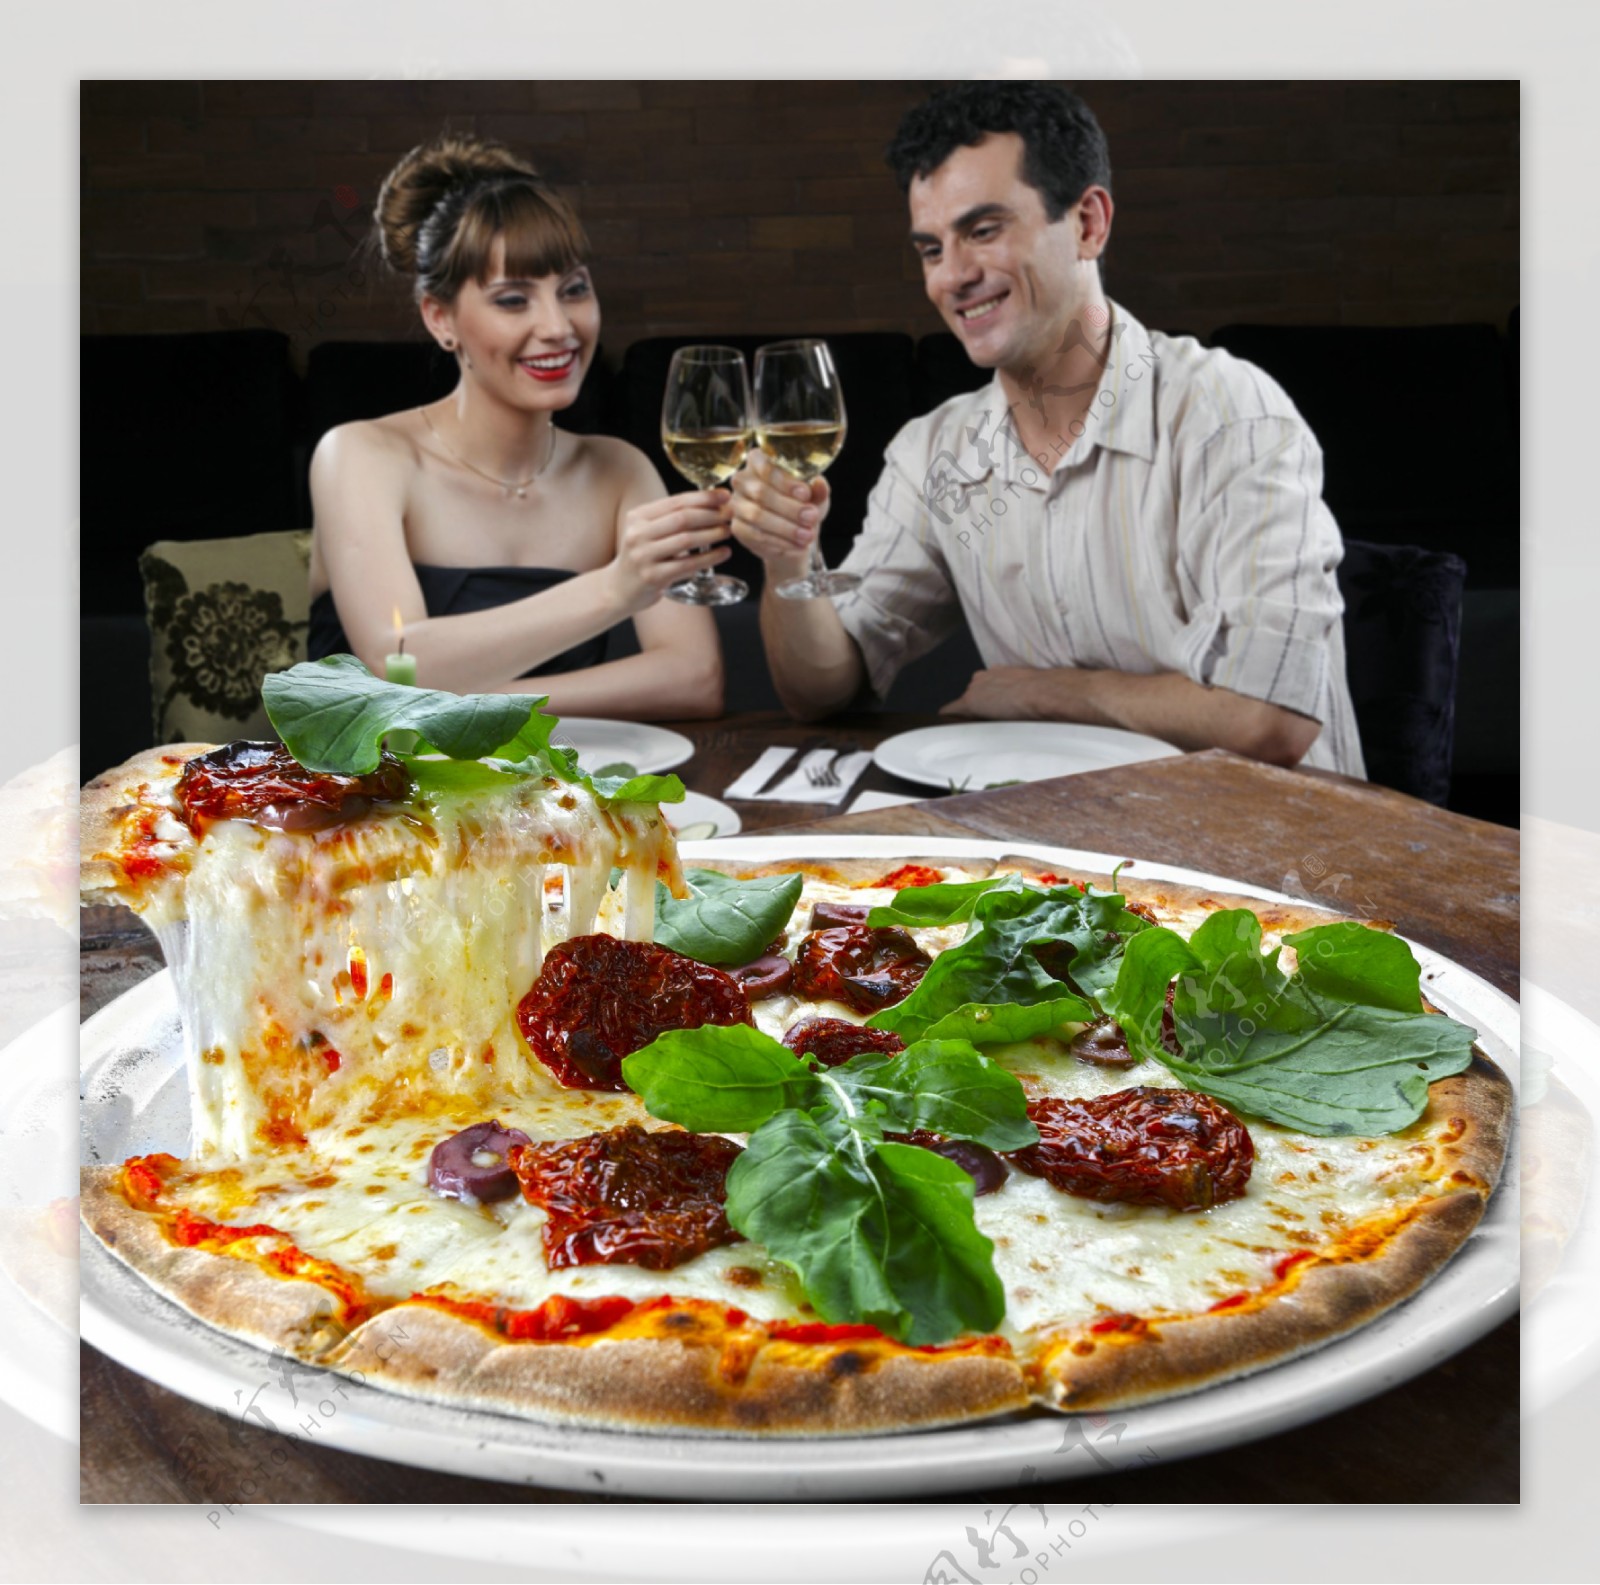 喝酒吃披萨的夫妻图片